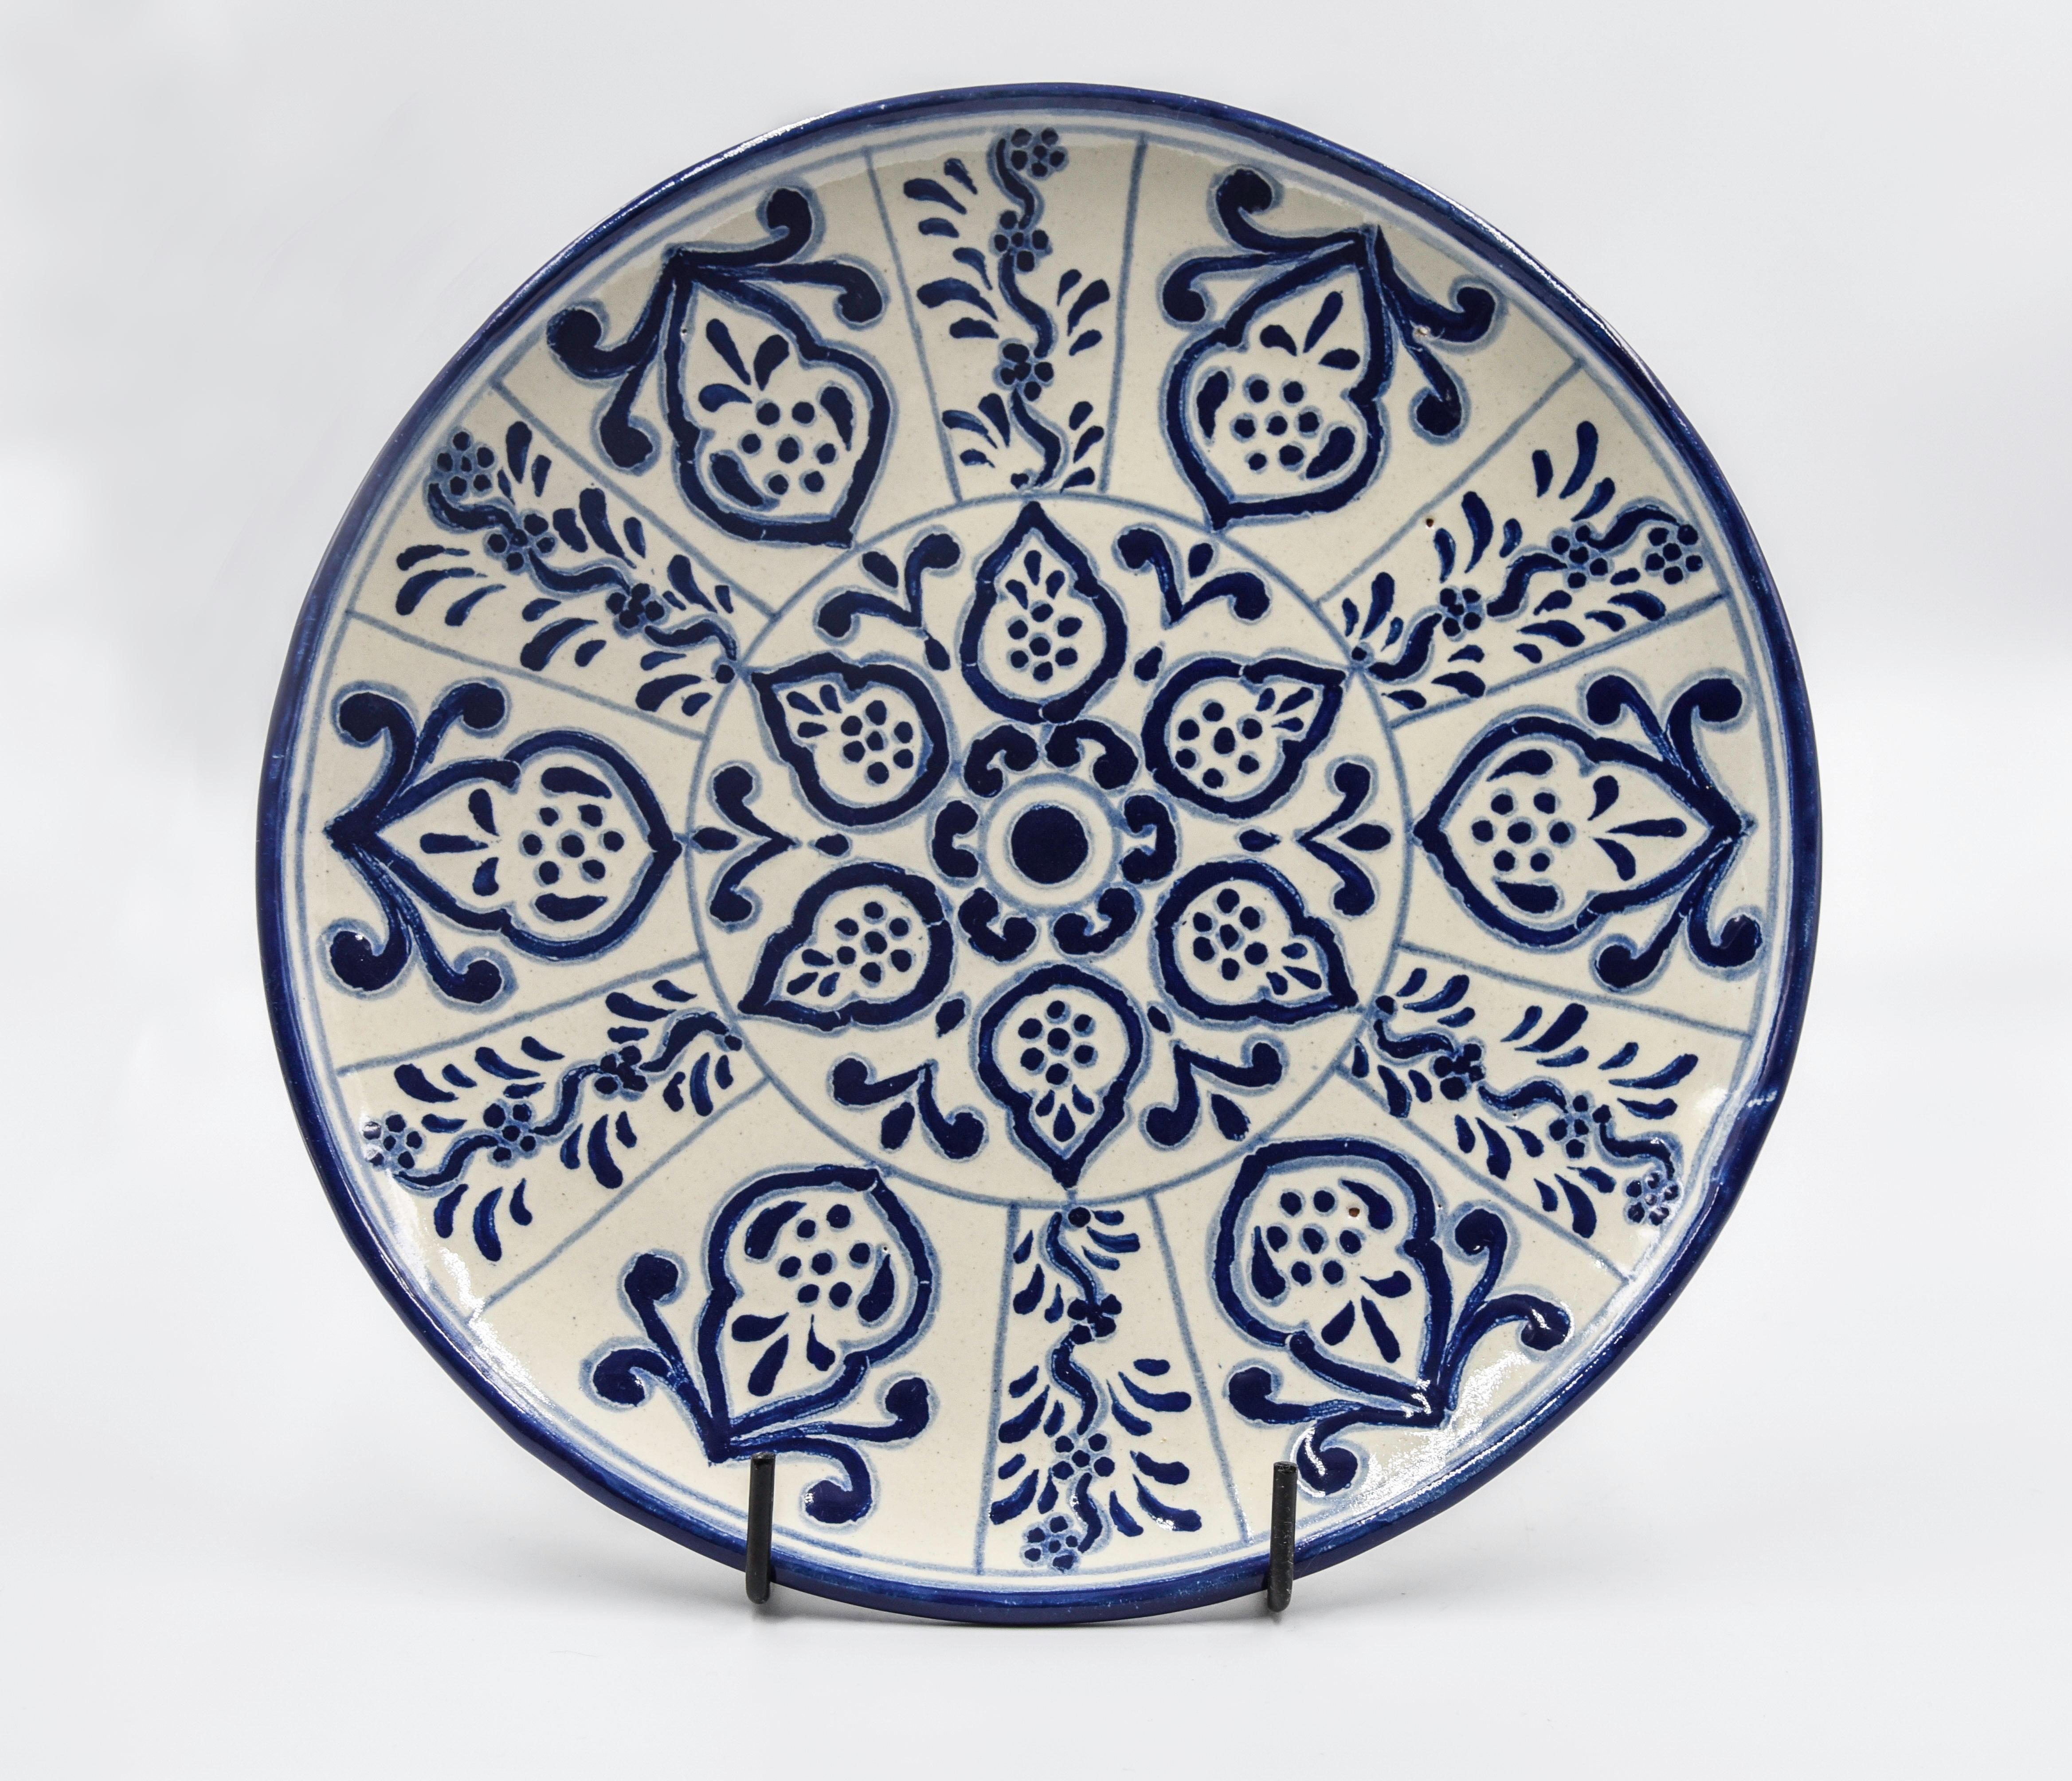 Dieser dekorative Talavera-Teller ist ein zeitgenössisches Beispiel für Talavera heute. Der Künstler Cesar Torres entlarvt die Vergangenheit und porträtiert die Gegenwart in einer Videopoche rustikaler mexikanischer Eleganz. 

Die Talavera ist nicht